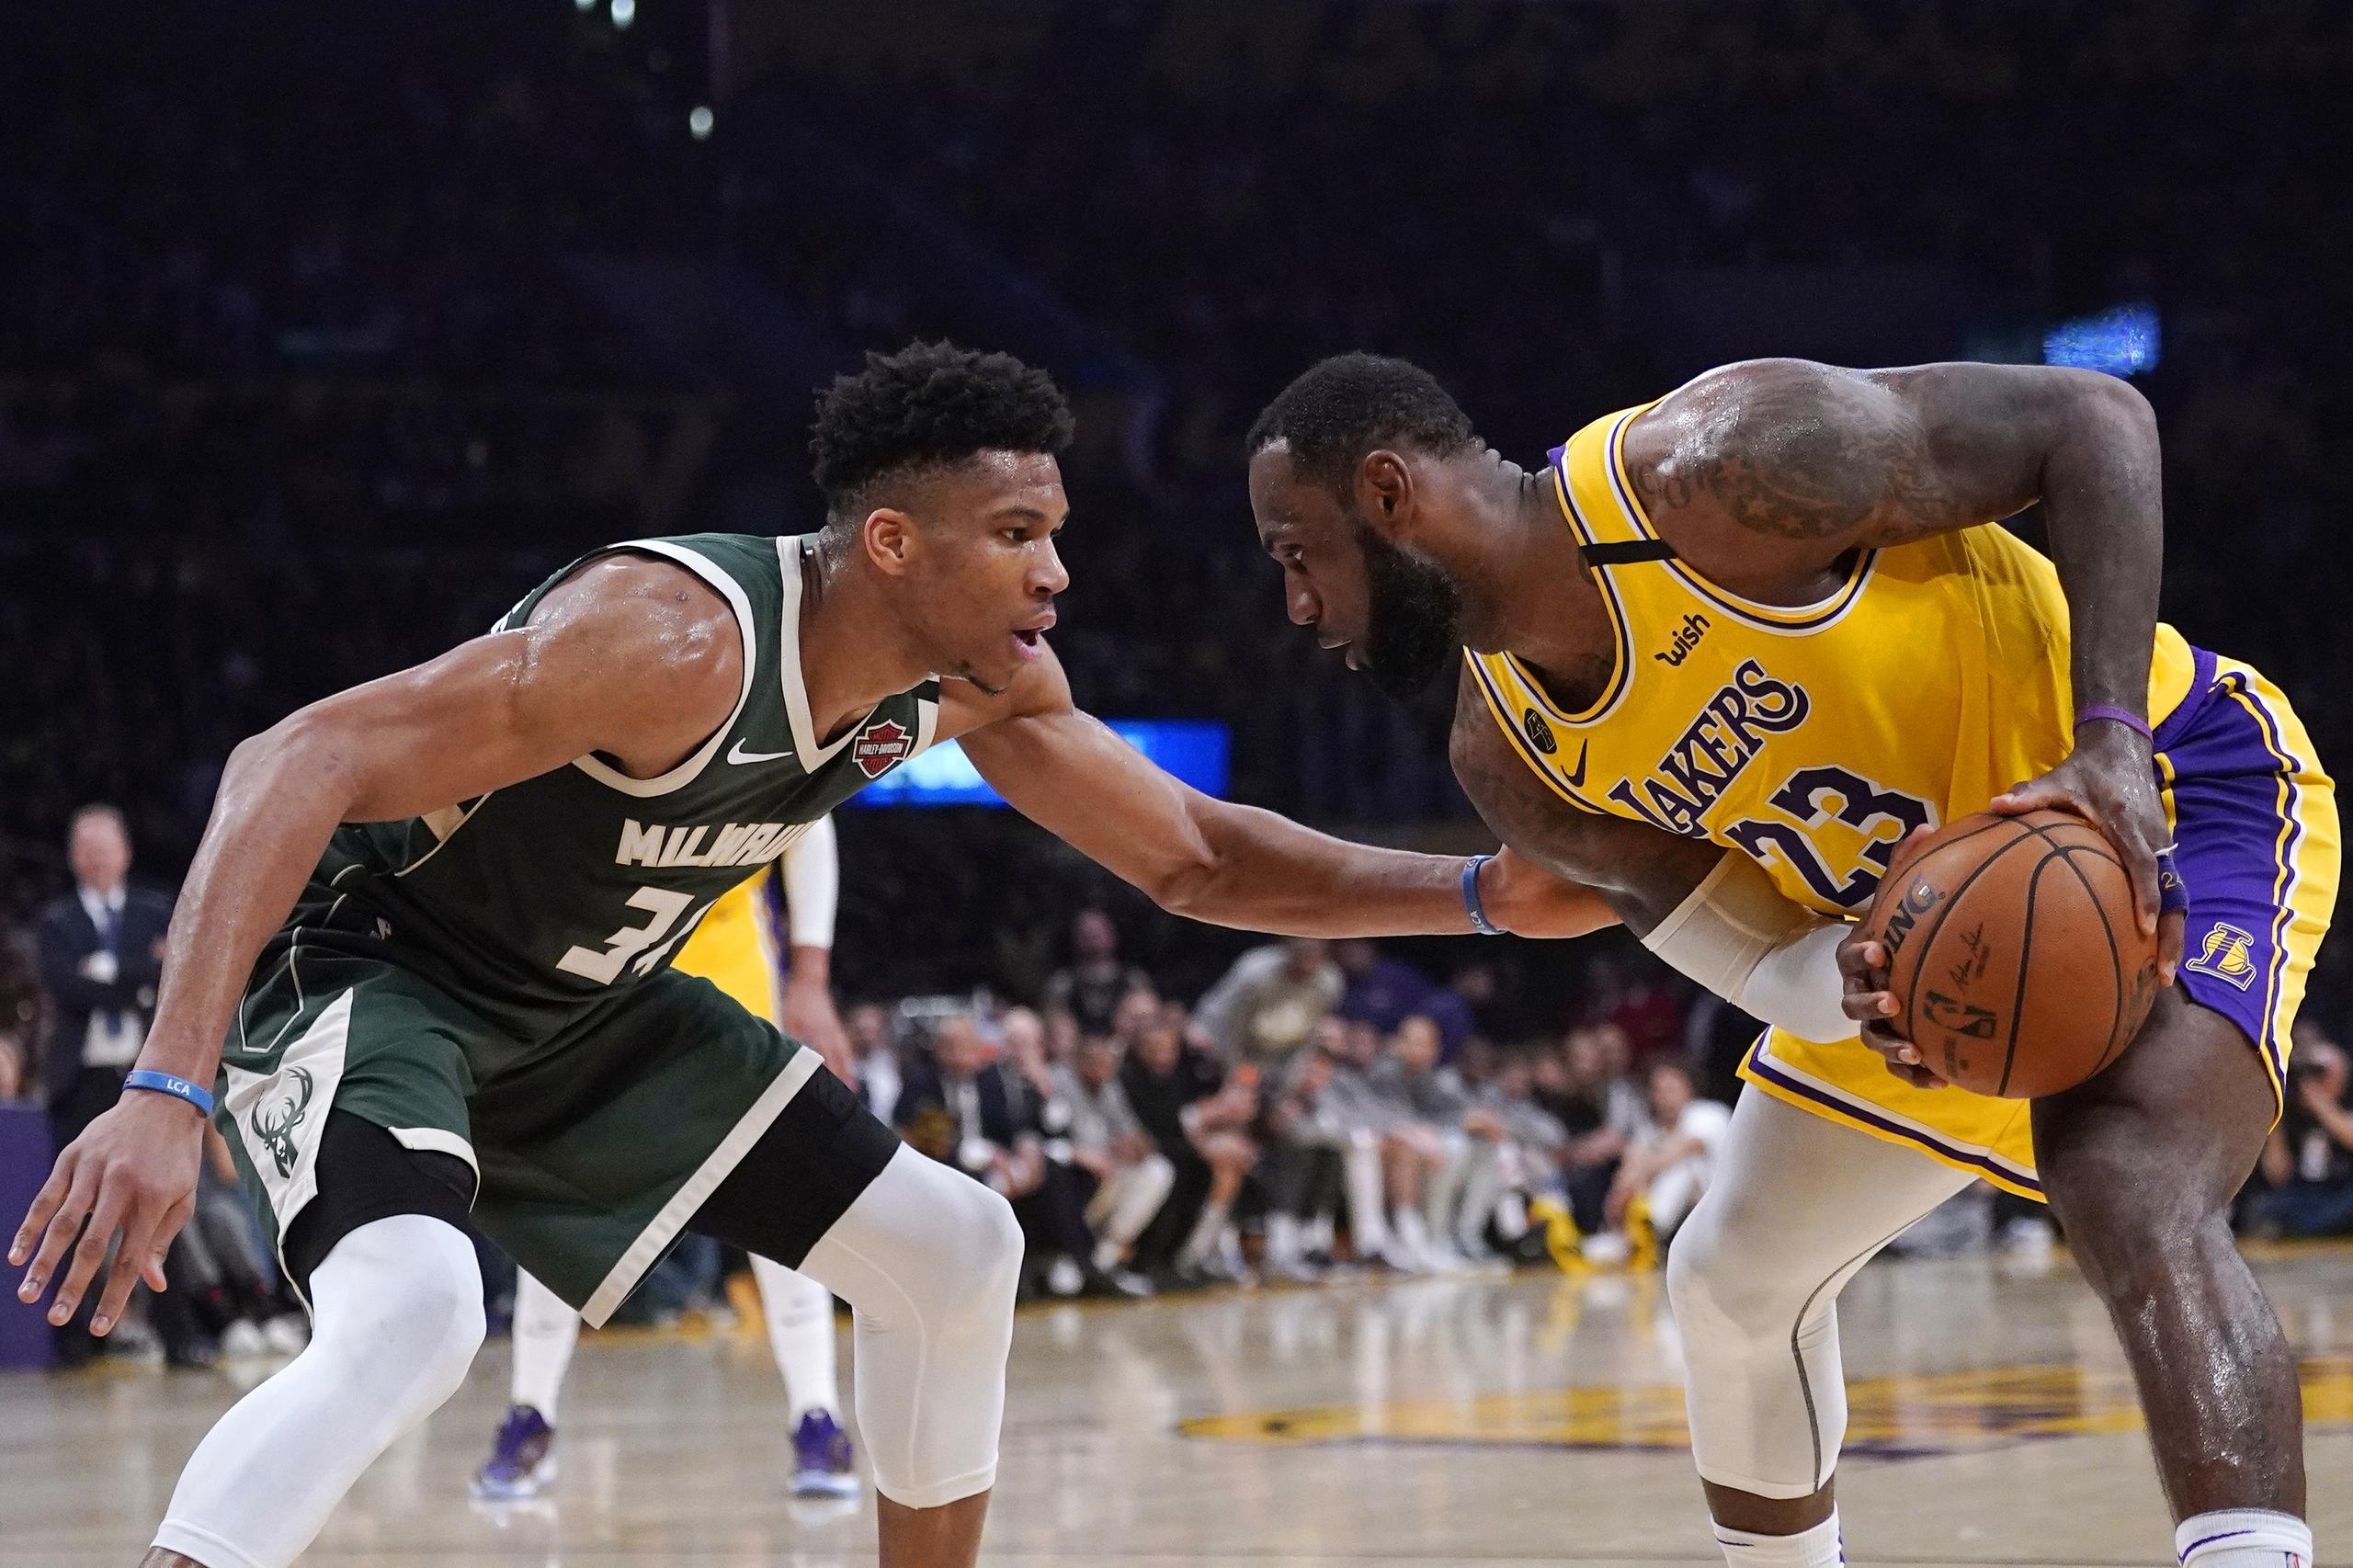 El jugador de los Lakers de Los Ángeles LeBron James intenta esquivar a Giannis Antetokounmpo, de los Bucks de Milwaukee, durante la segunda mitad del juego de la NBA que enfrentó a ambos equipos.